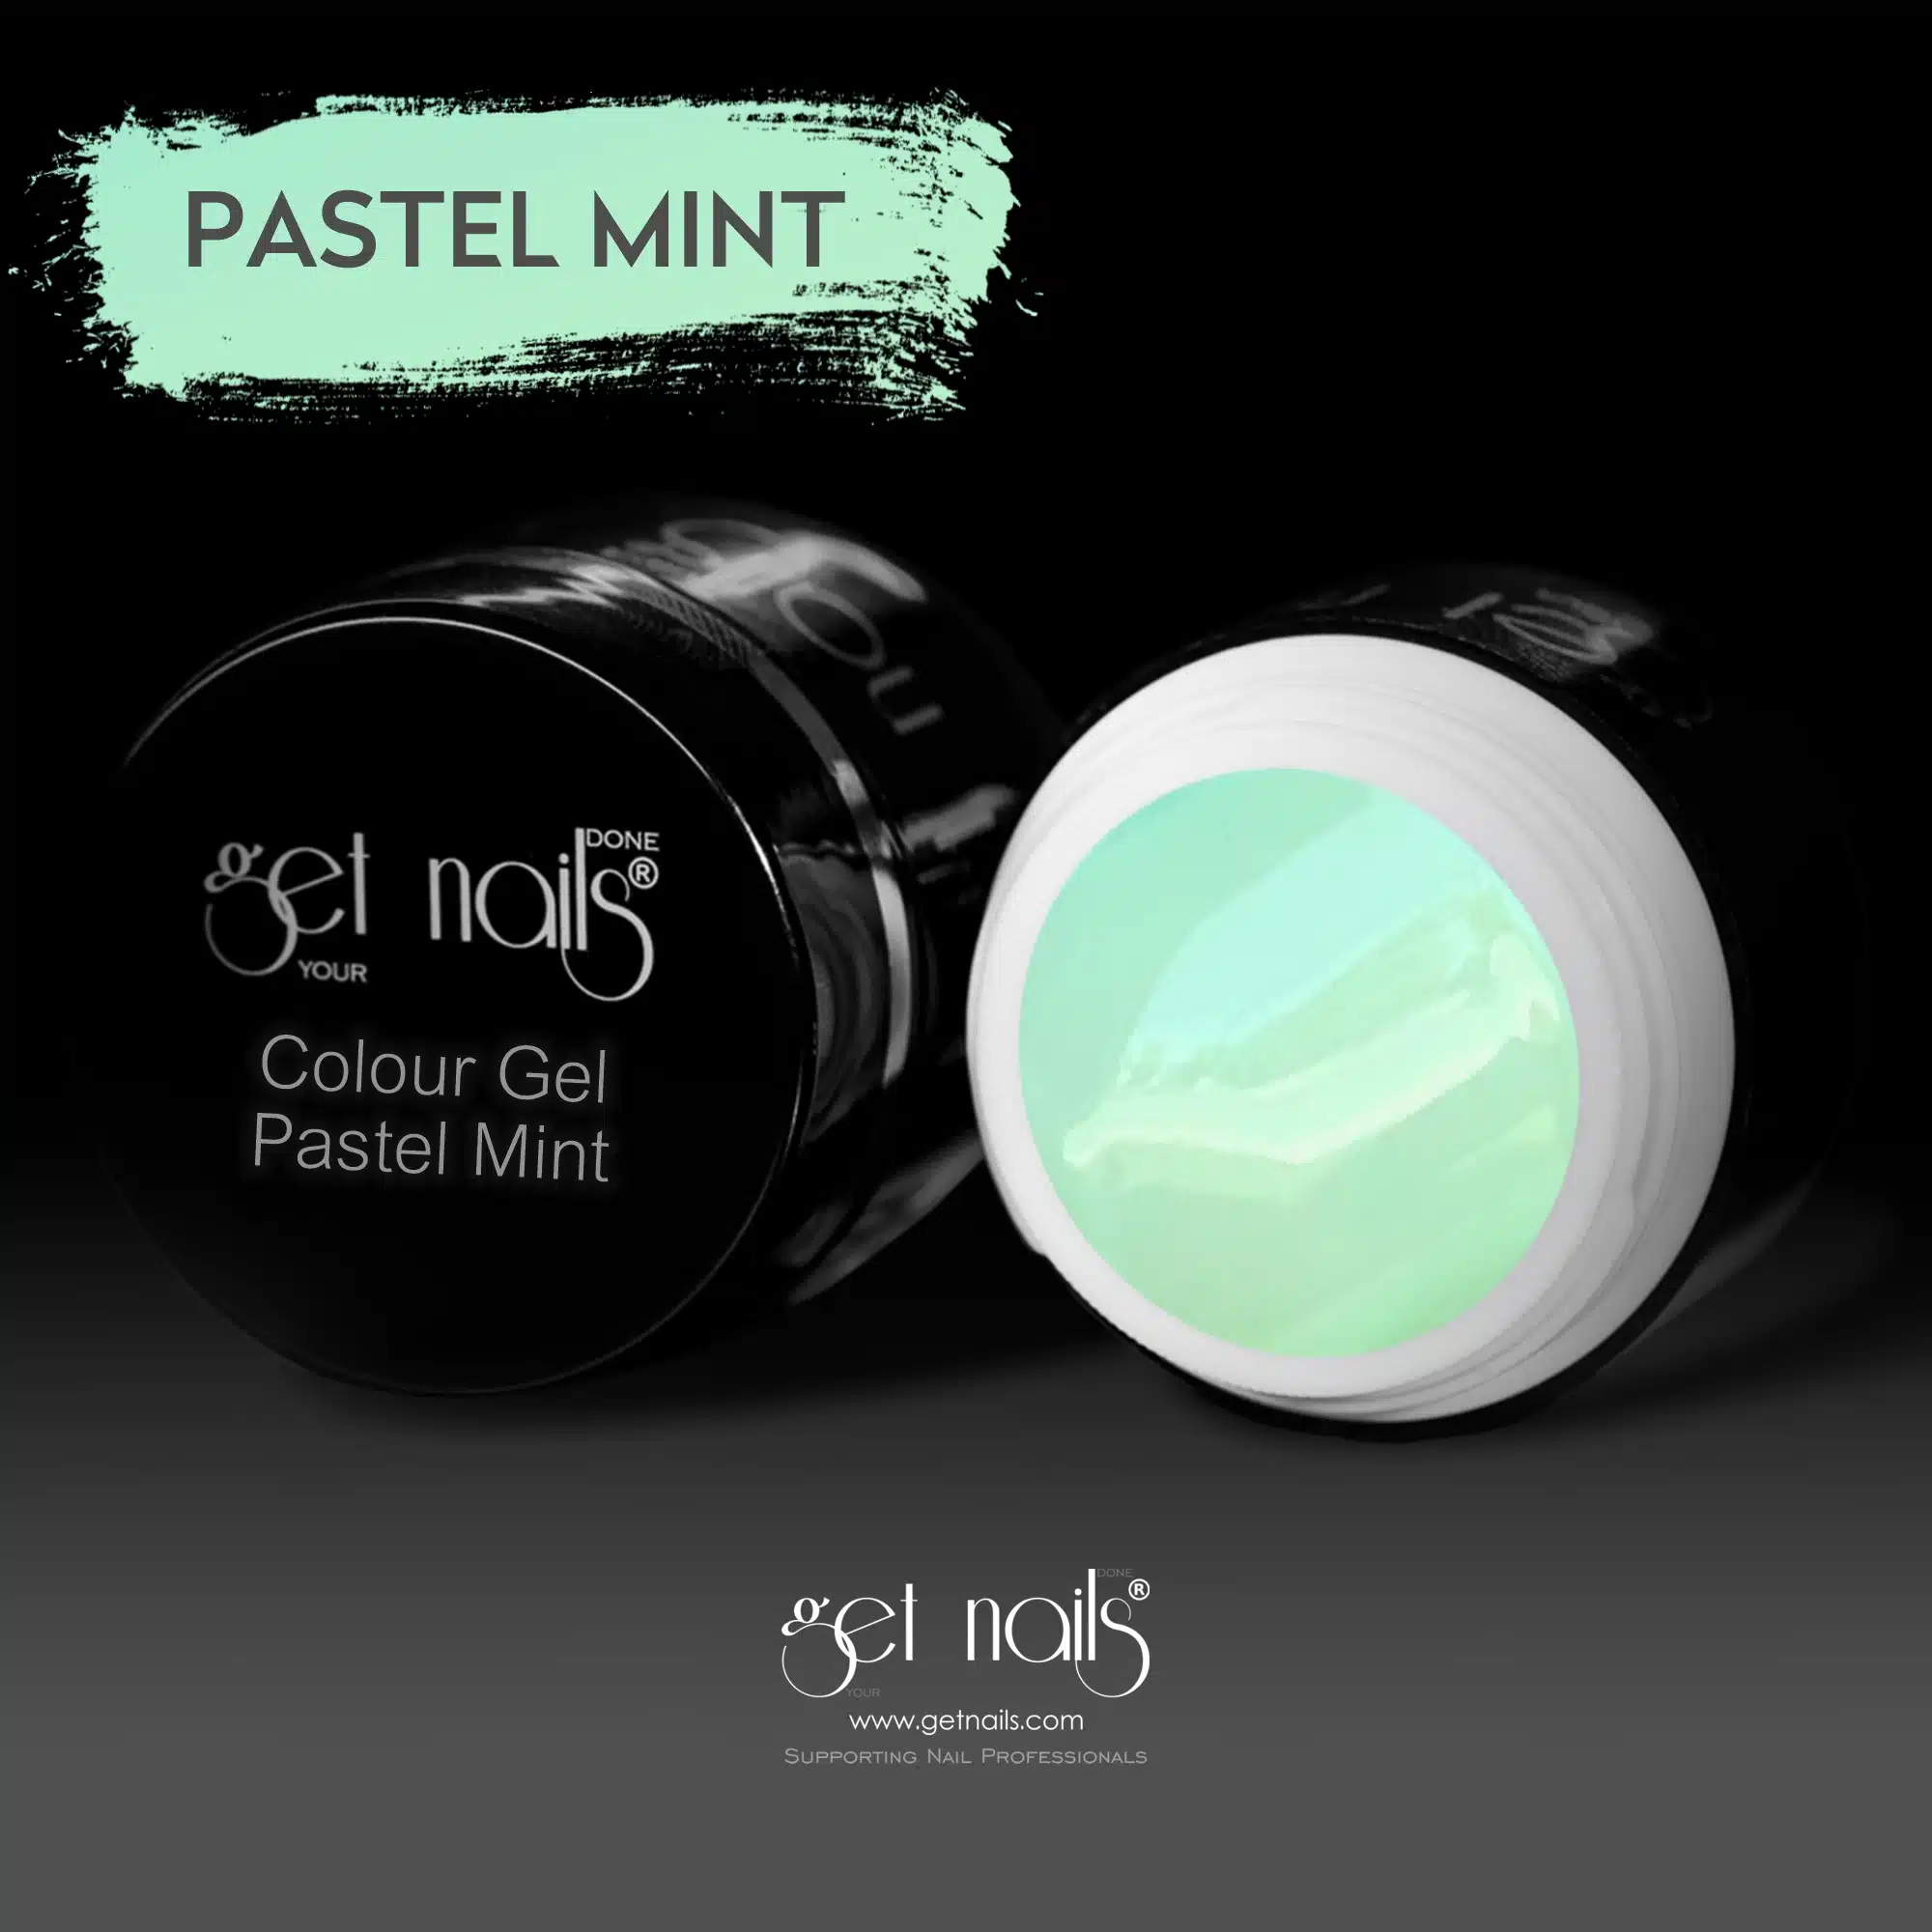 Get Nails Austria - Colour Gel Pastel Mint 5g